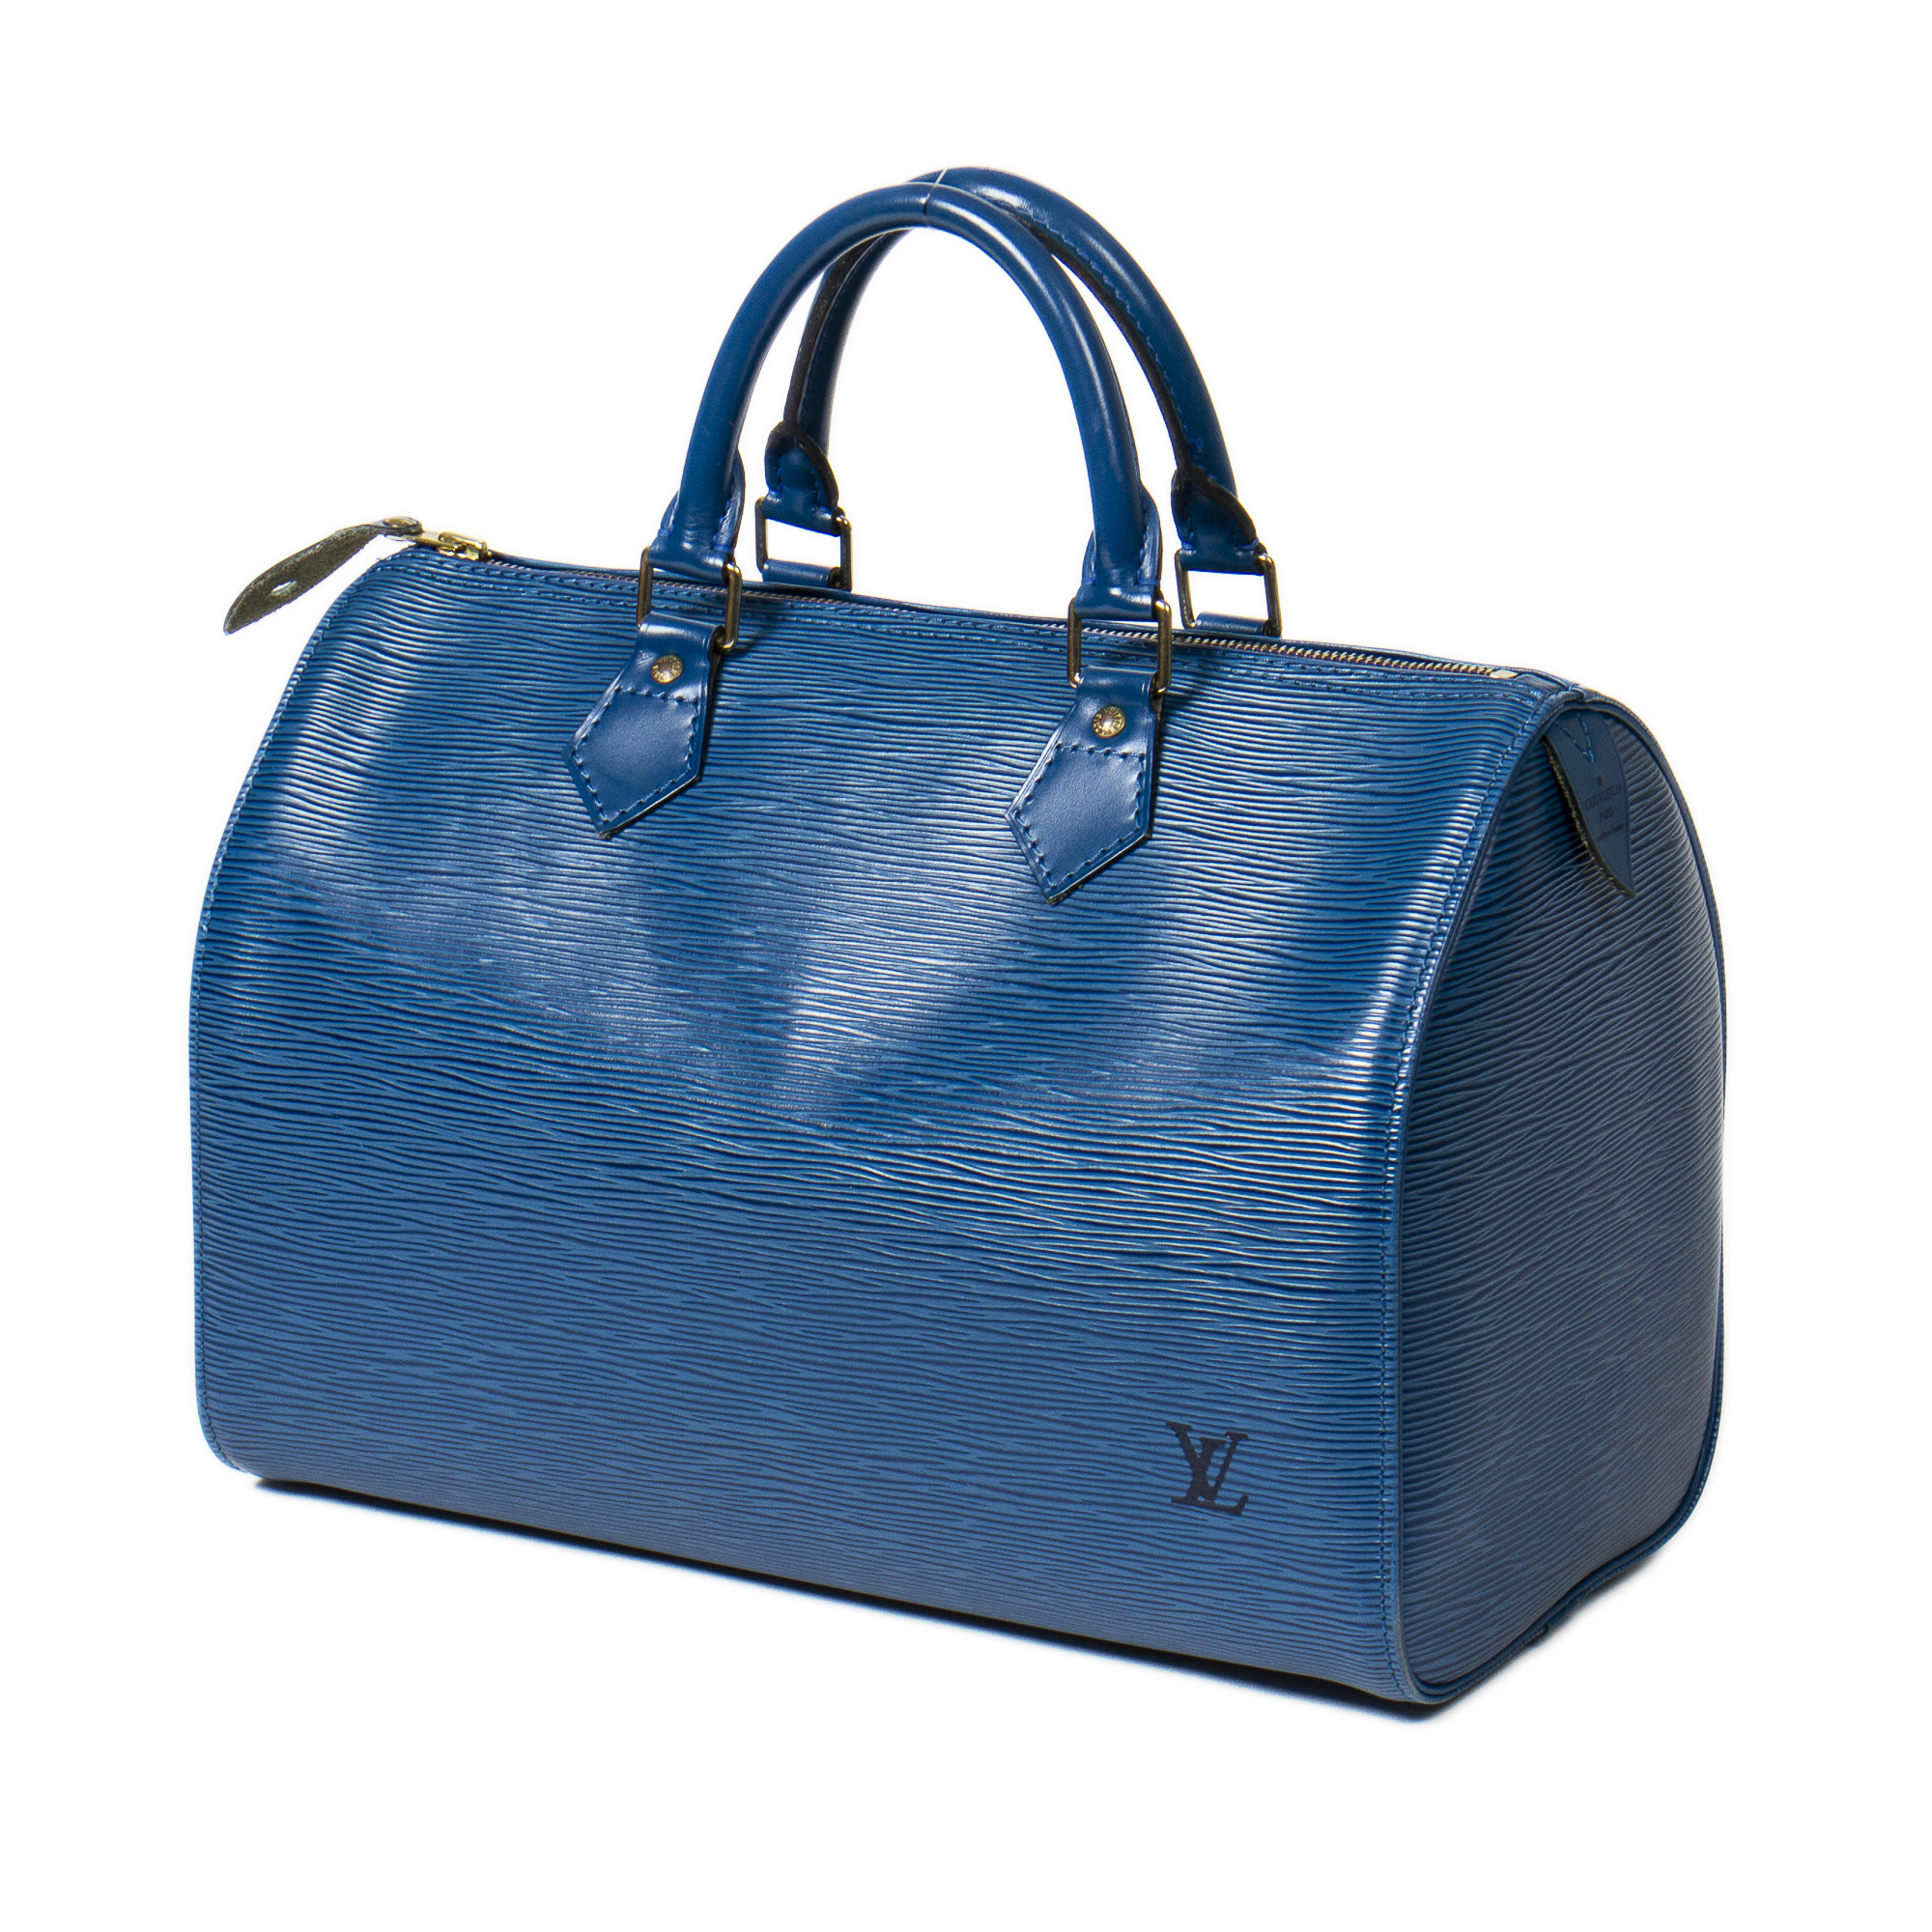 Louis Vuitton Blue Epi Leather Speedy 30